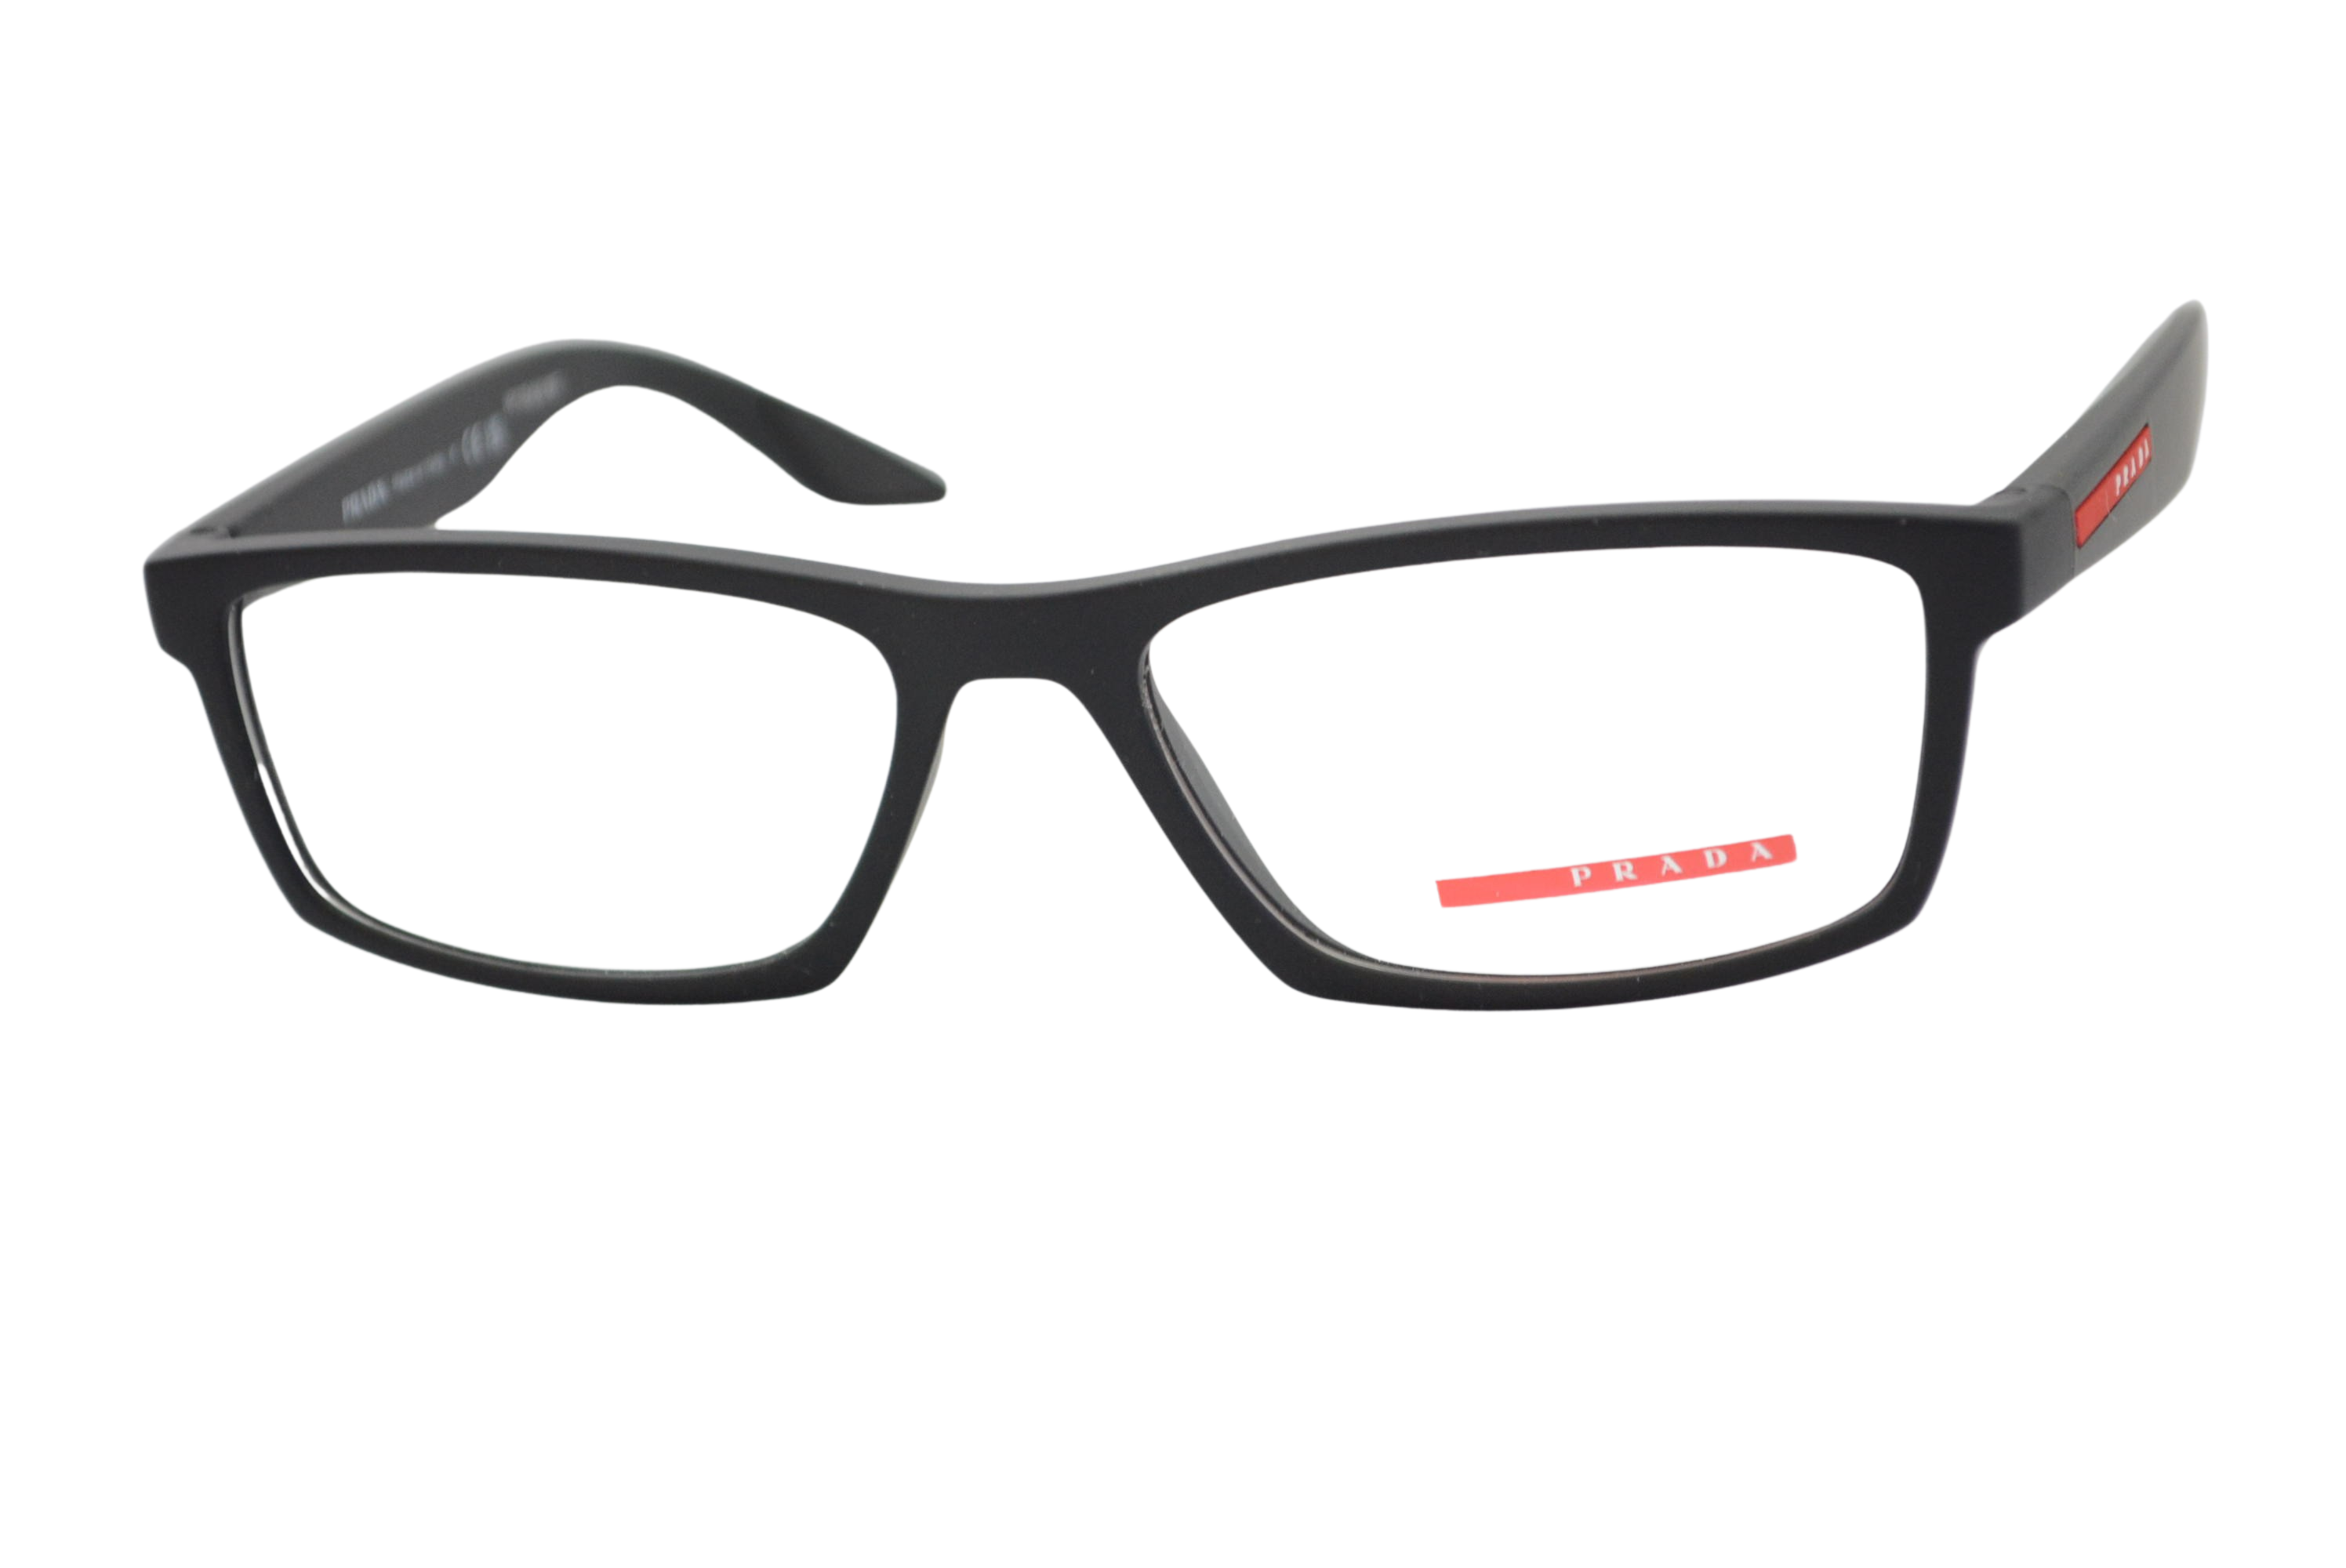 armação de óculos Prada Linea Rossa mod vps04p dg0-1o1